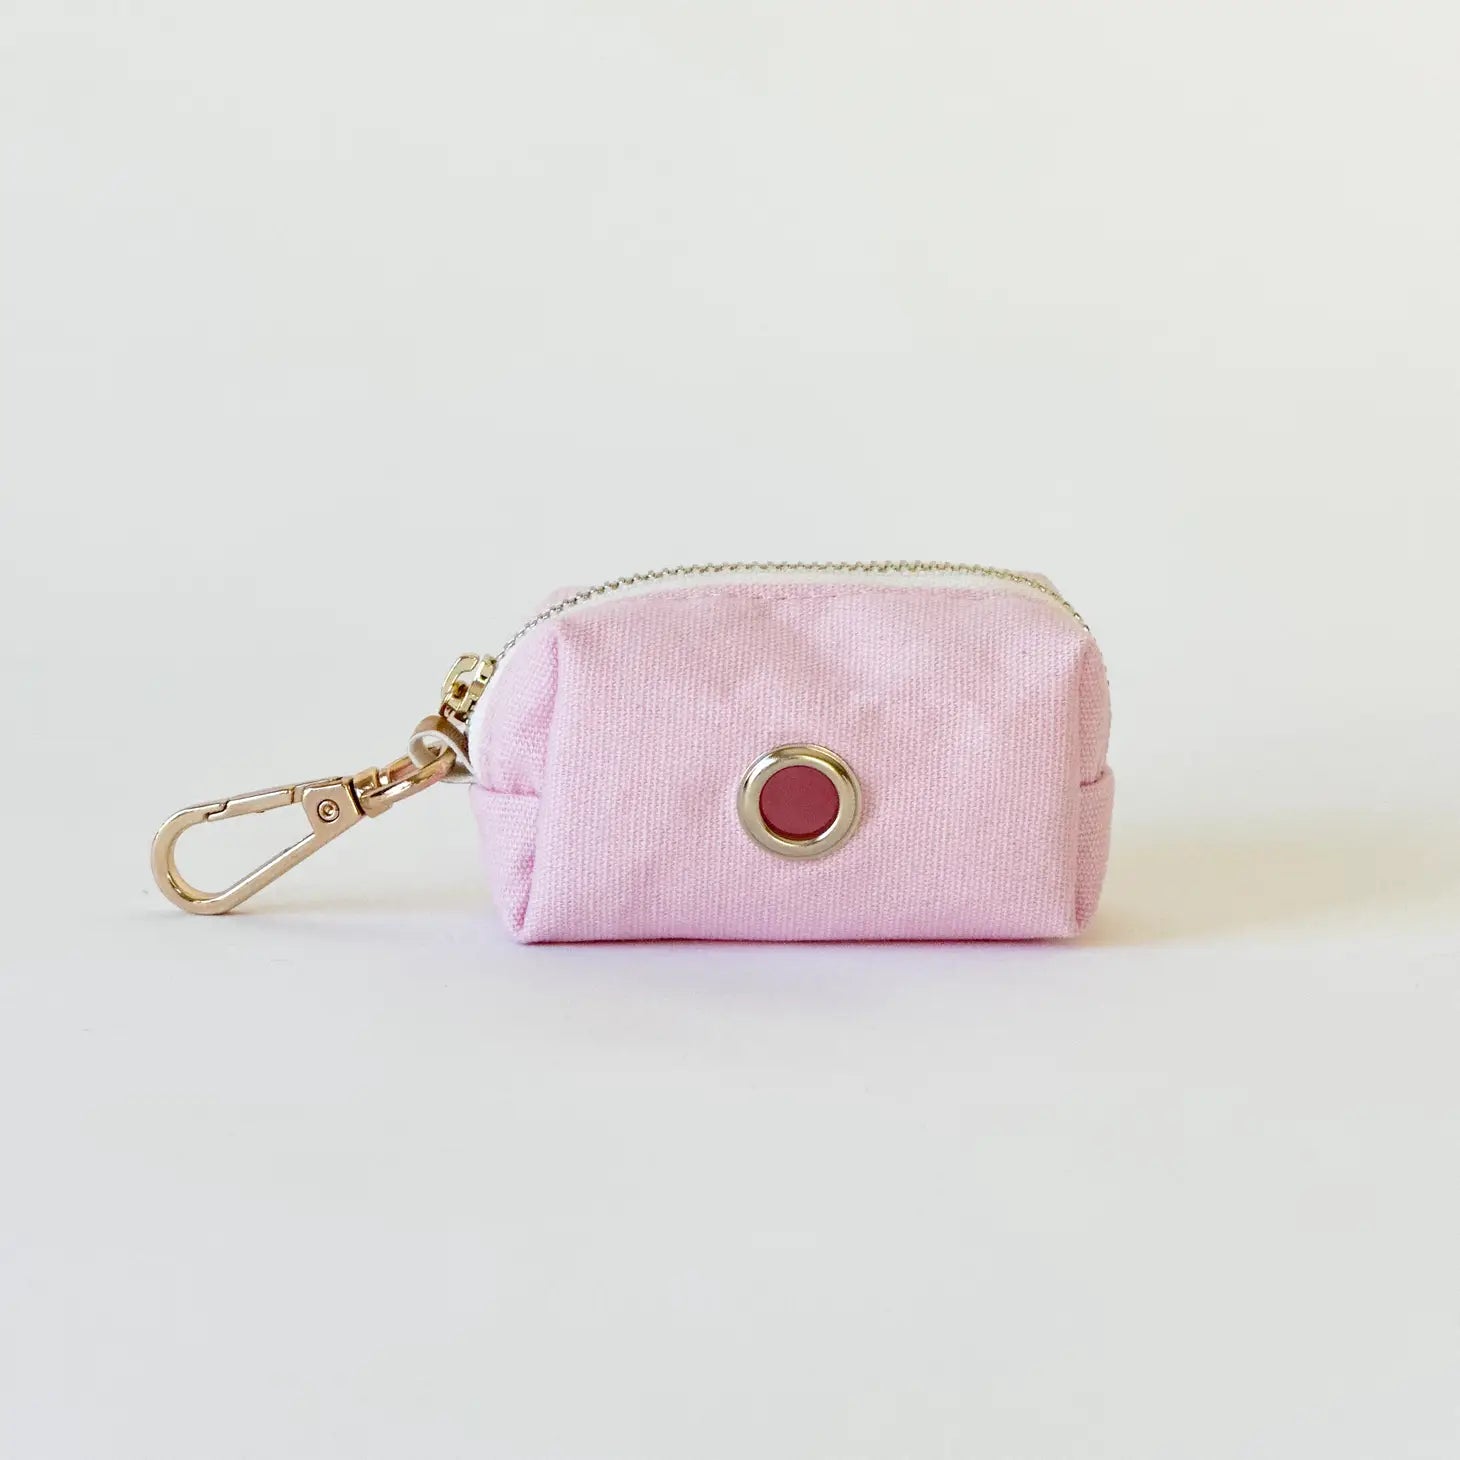 Poop Bag Holder - Pastel Pink